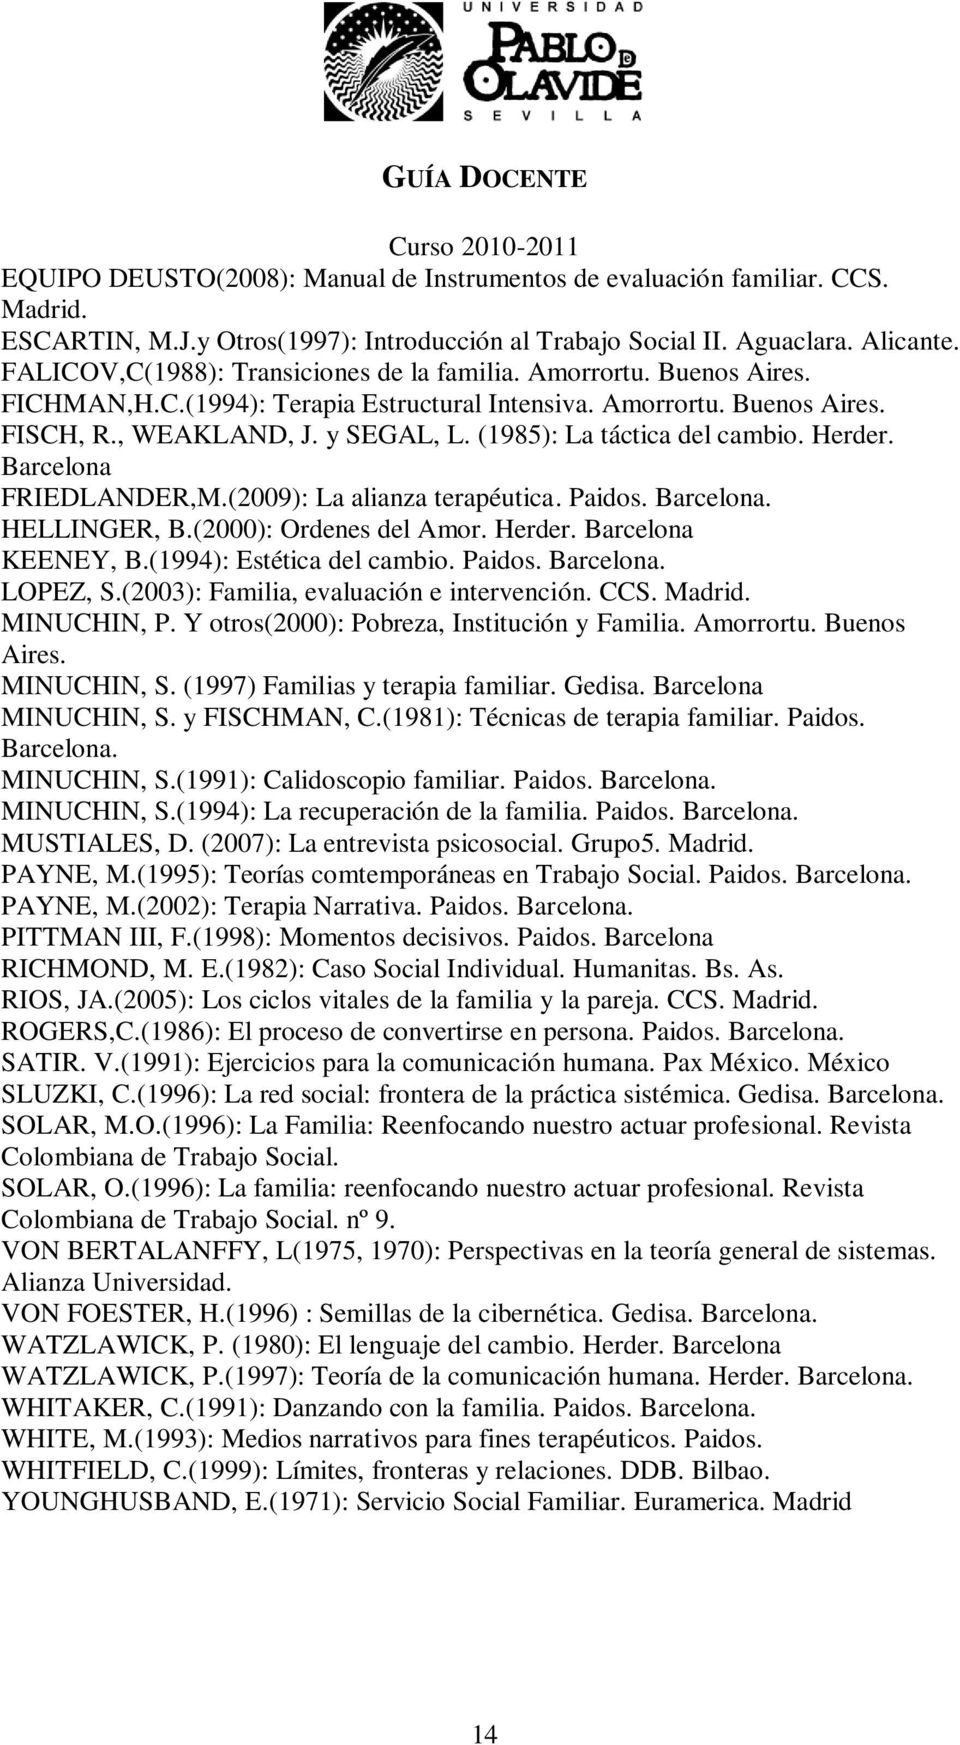 (1985): La táctica del cambio. Herder. Barcelona FRIEDLANDER,M.(2009): La alianza terapéutica. Paidos. Barcelona. HELLINGER, B.(2000): Ordenes del Amor. Herder. Barcelona KEENEY, B.